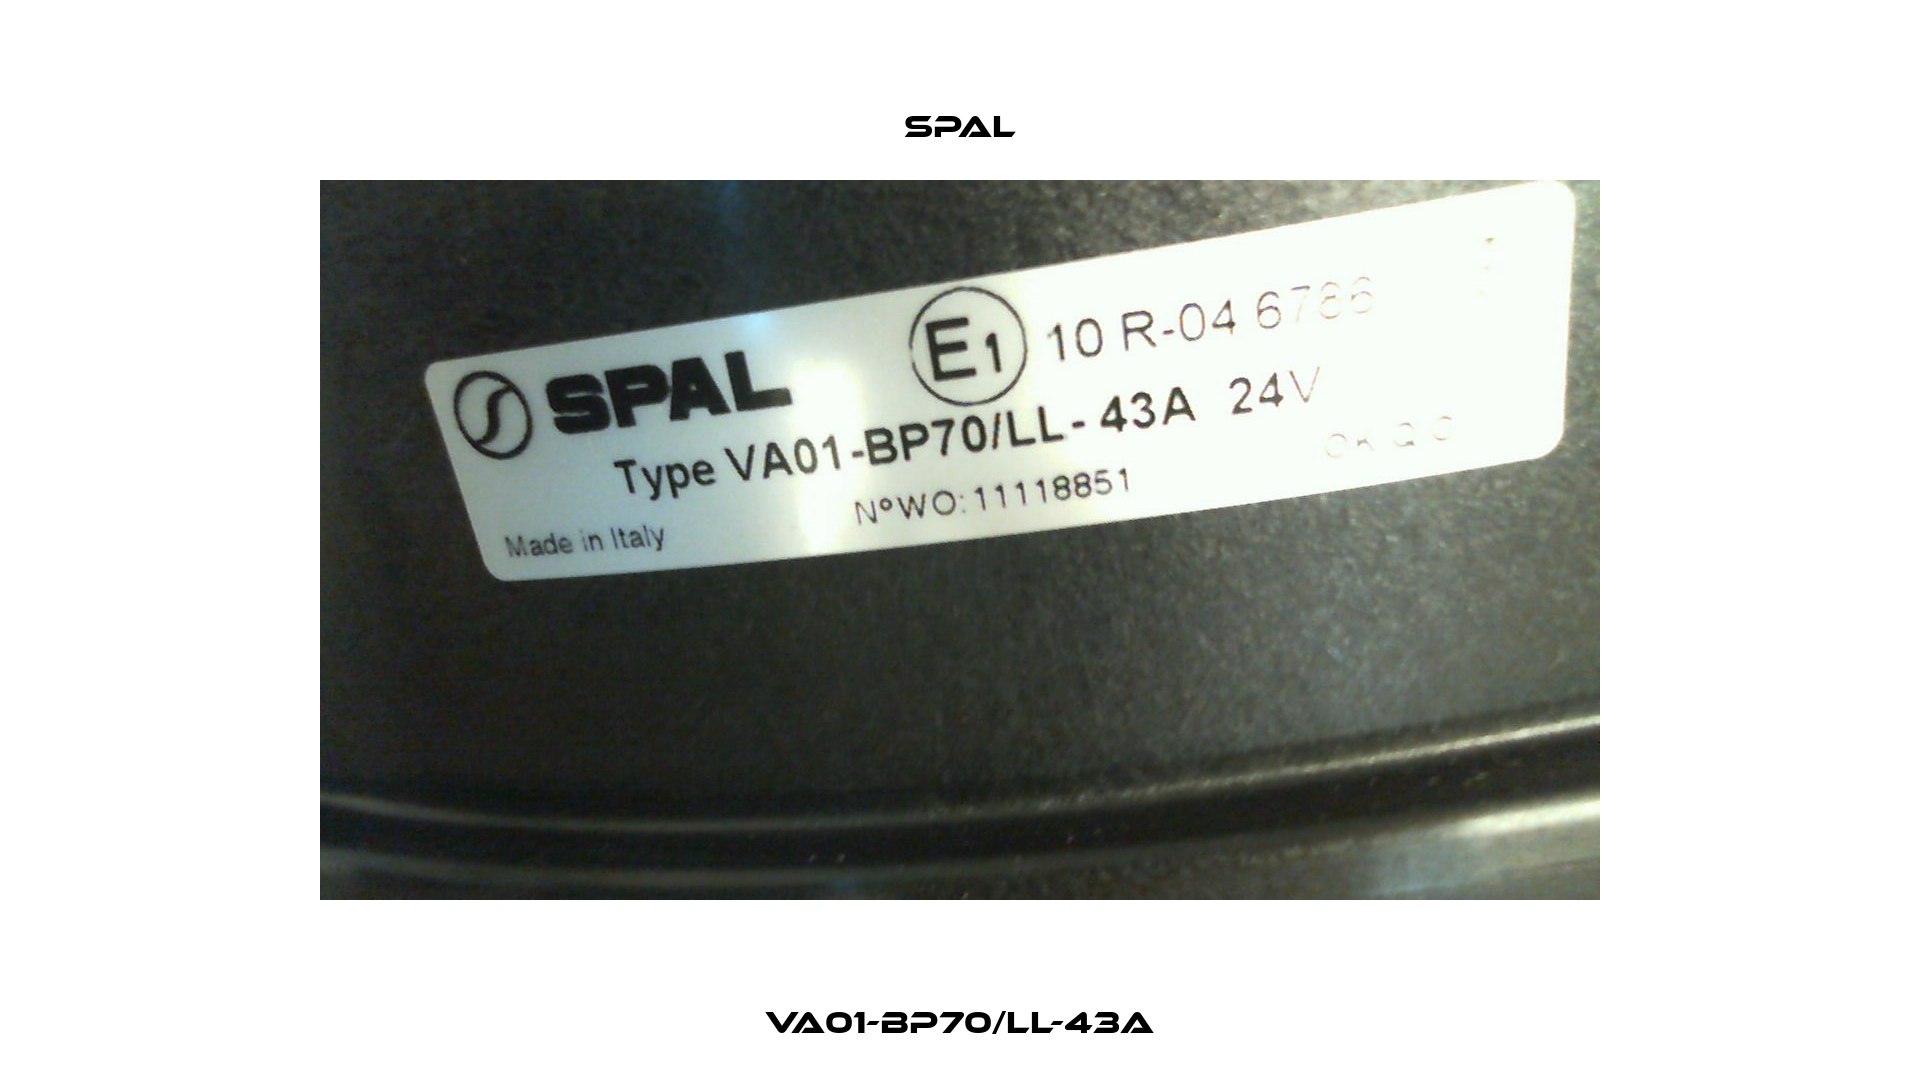 VA01-BP70/LL-43A SPAL